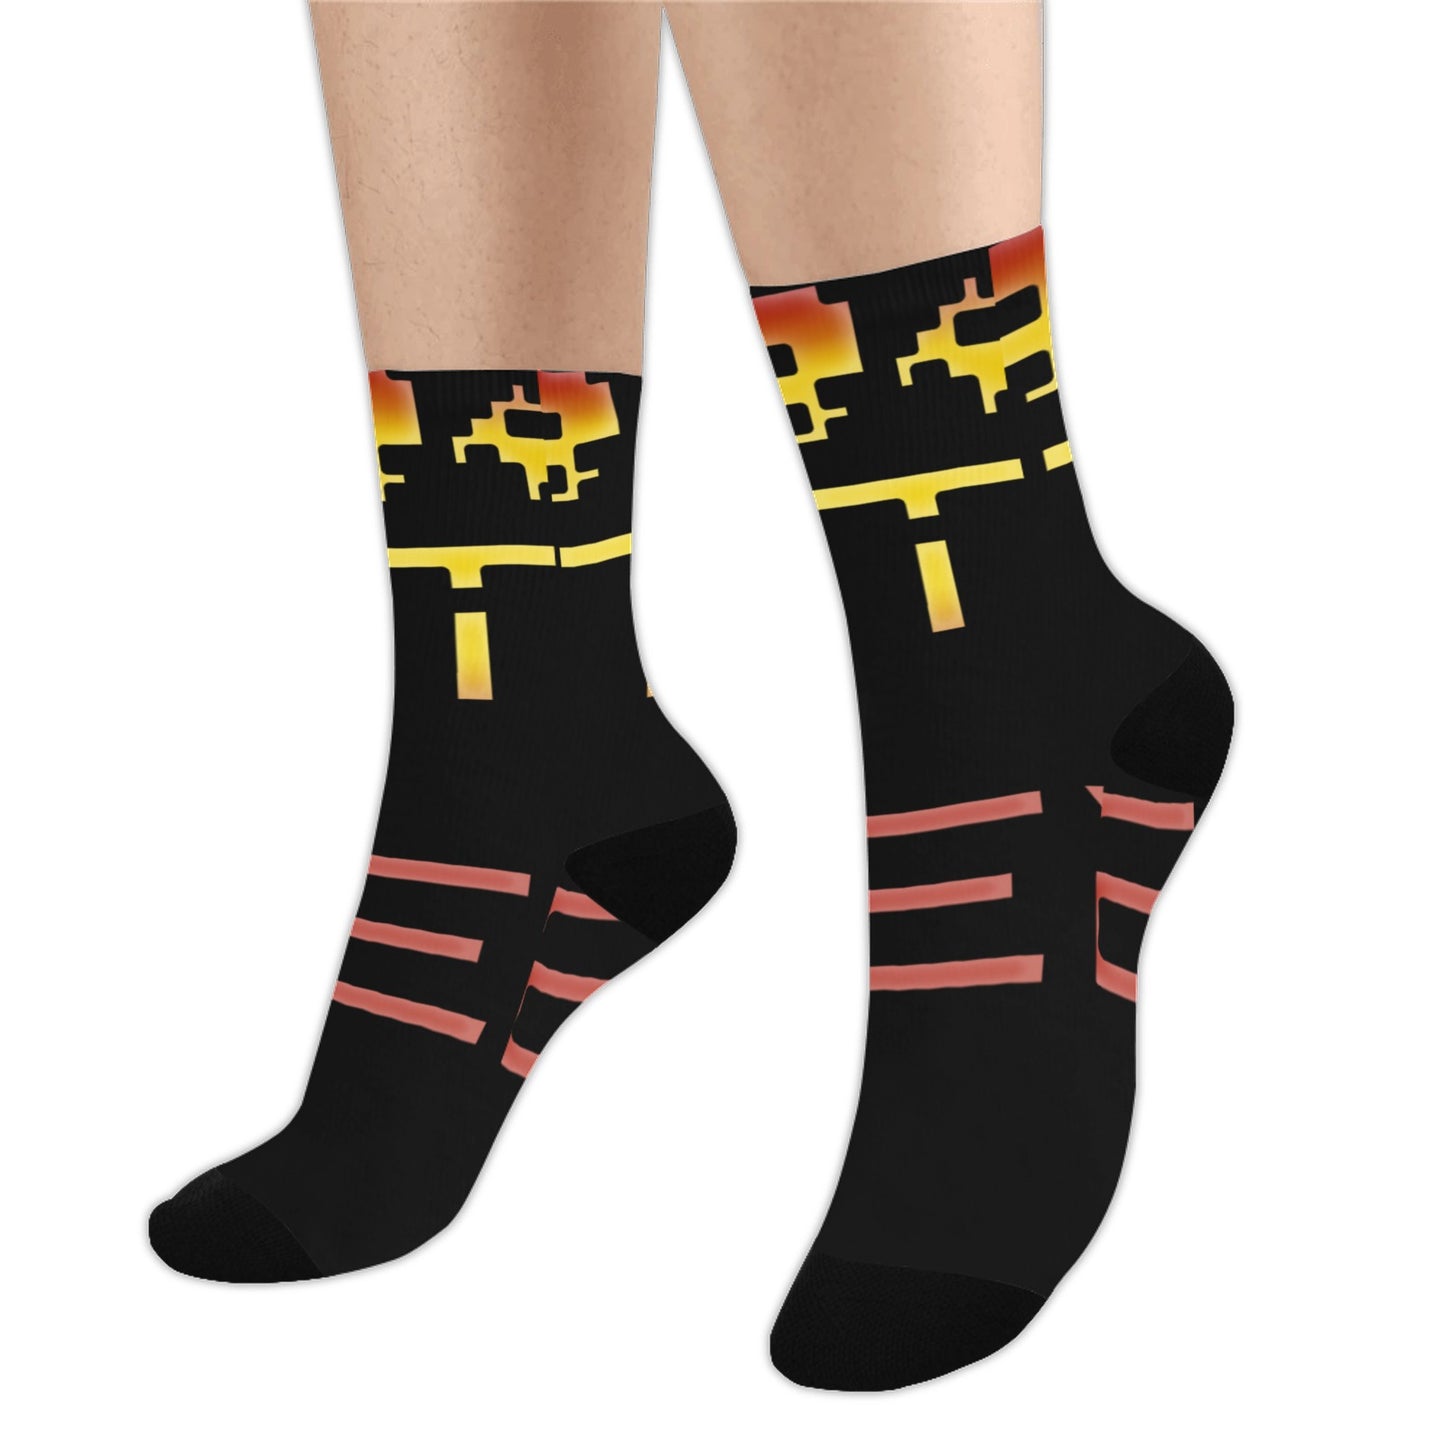 fz unisex socks - red